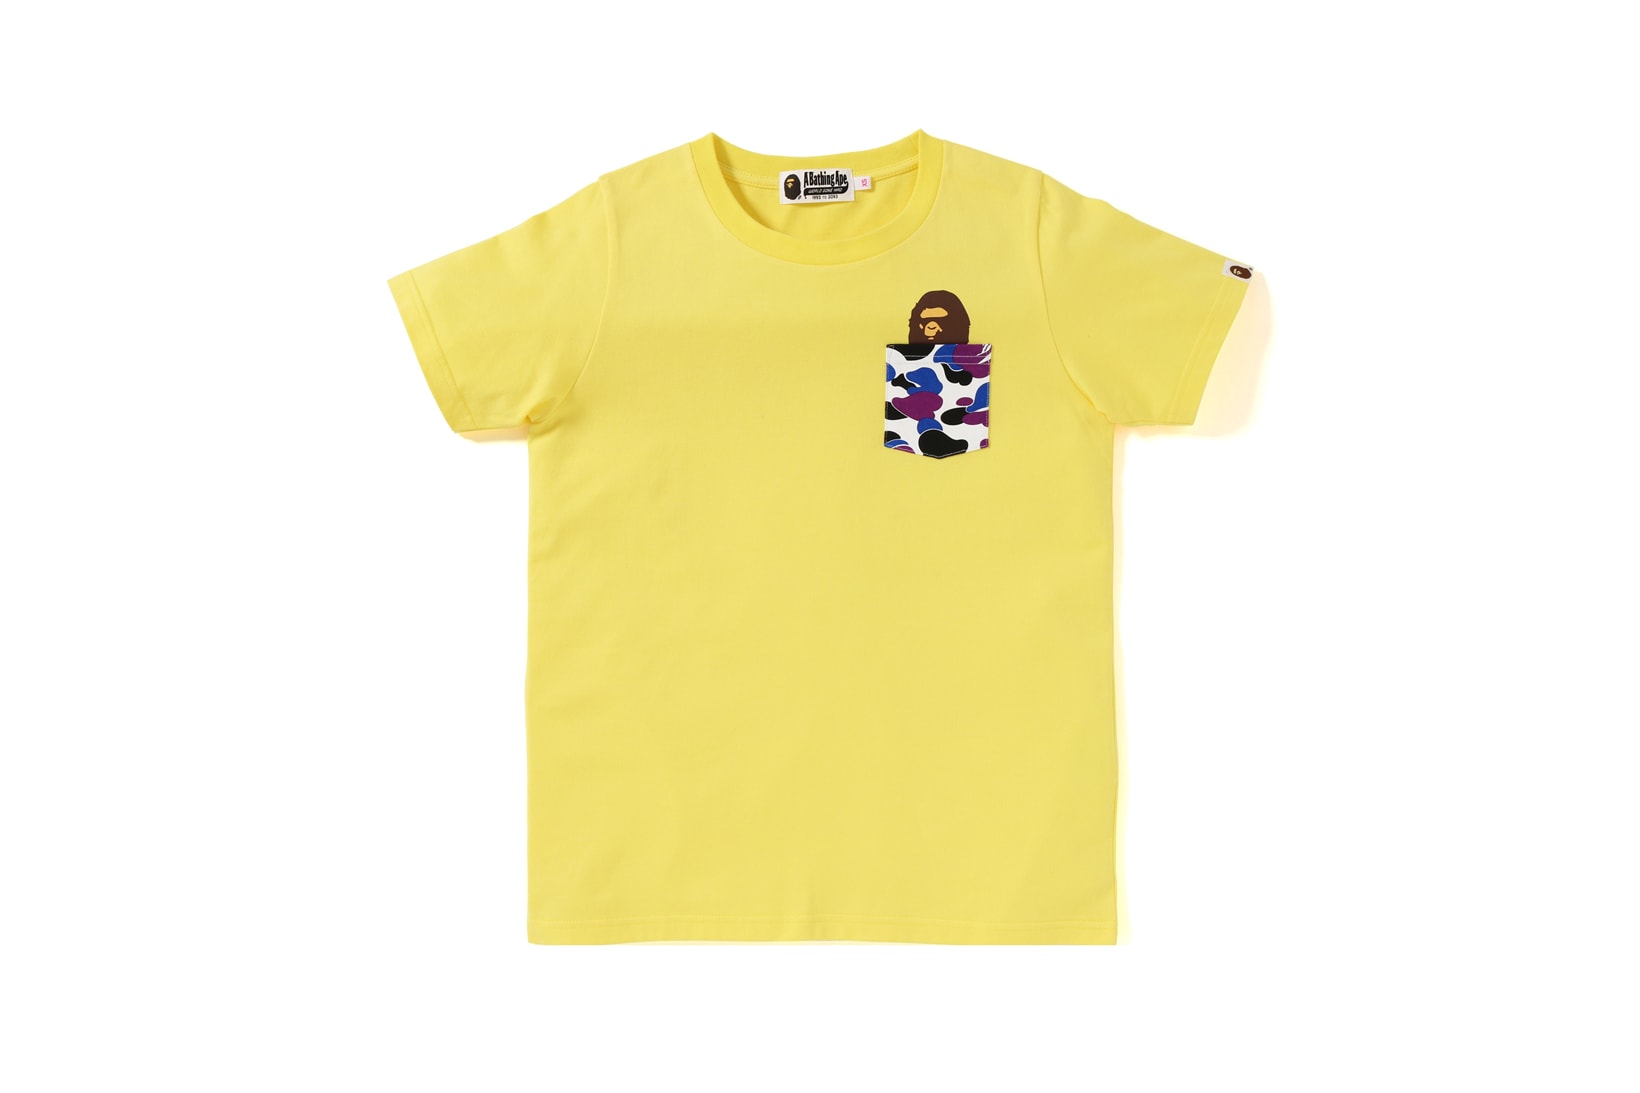 BAPE Hong Kong 13 Anniversary Collection Shirt Yellow